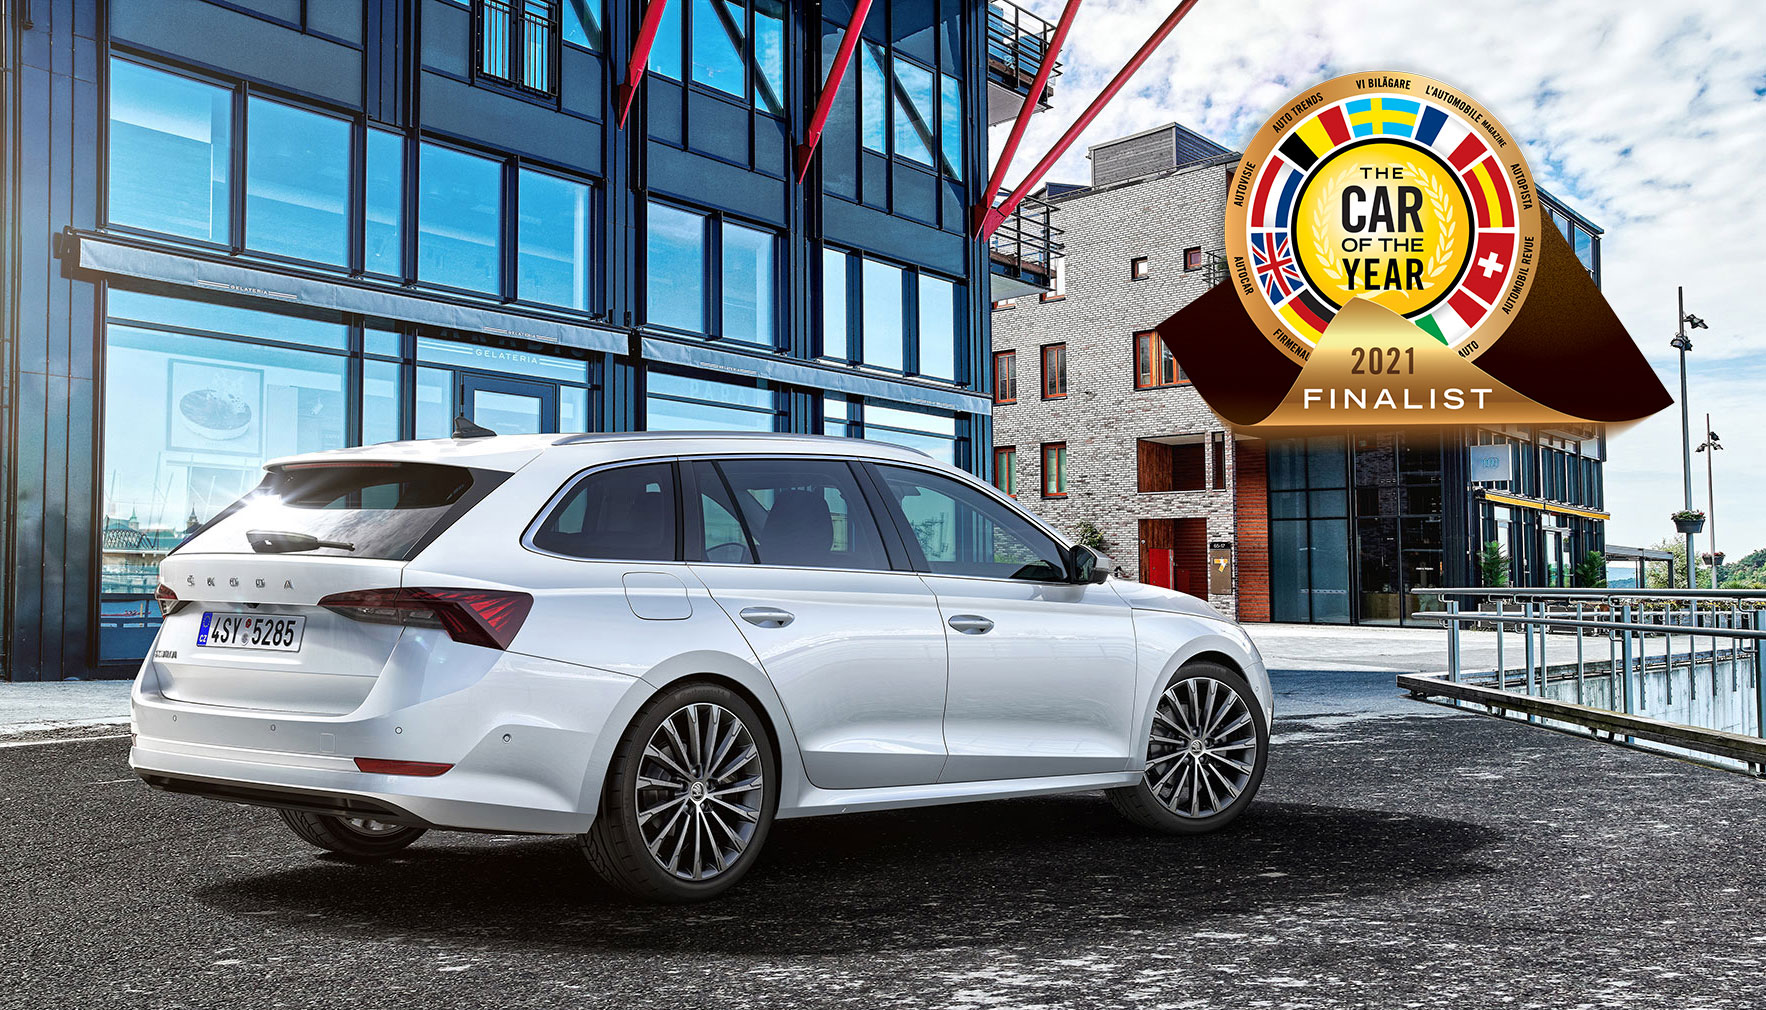 Η Skoda Octavia υποψήφια για το πανευρωπαϊκό βραβείο “Car of the Year”